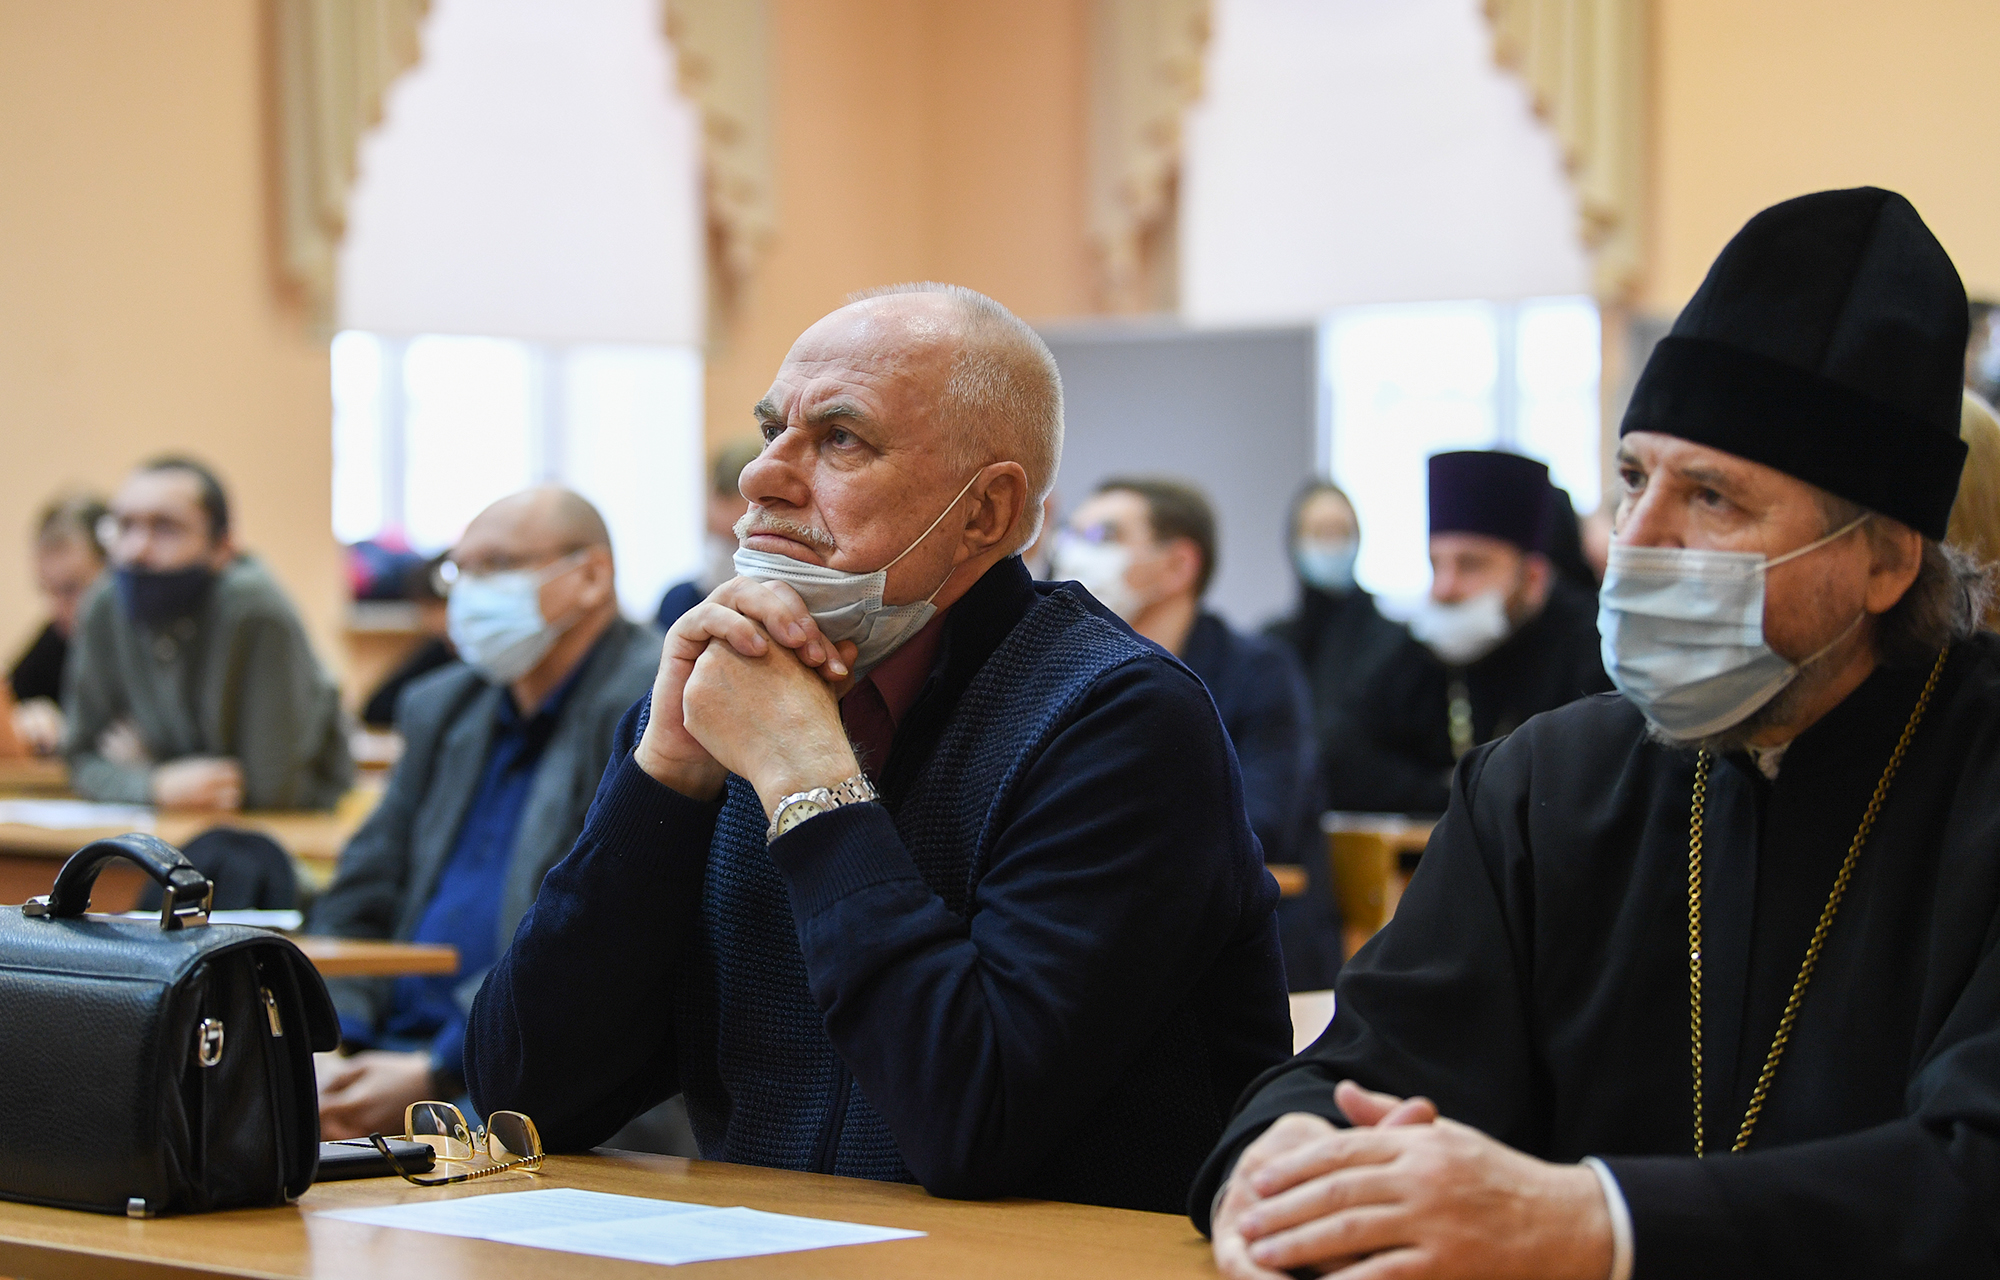 В областной столице проходит Межрегиональная научная конференция, посвящённая 750-летию Тверской епархии